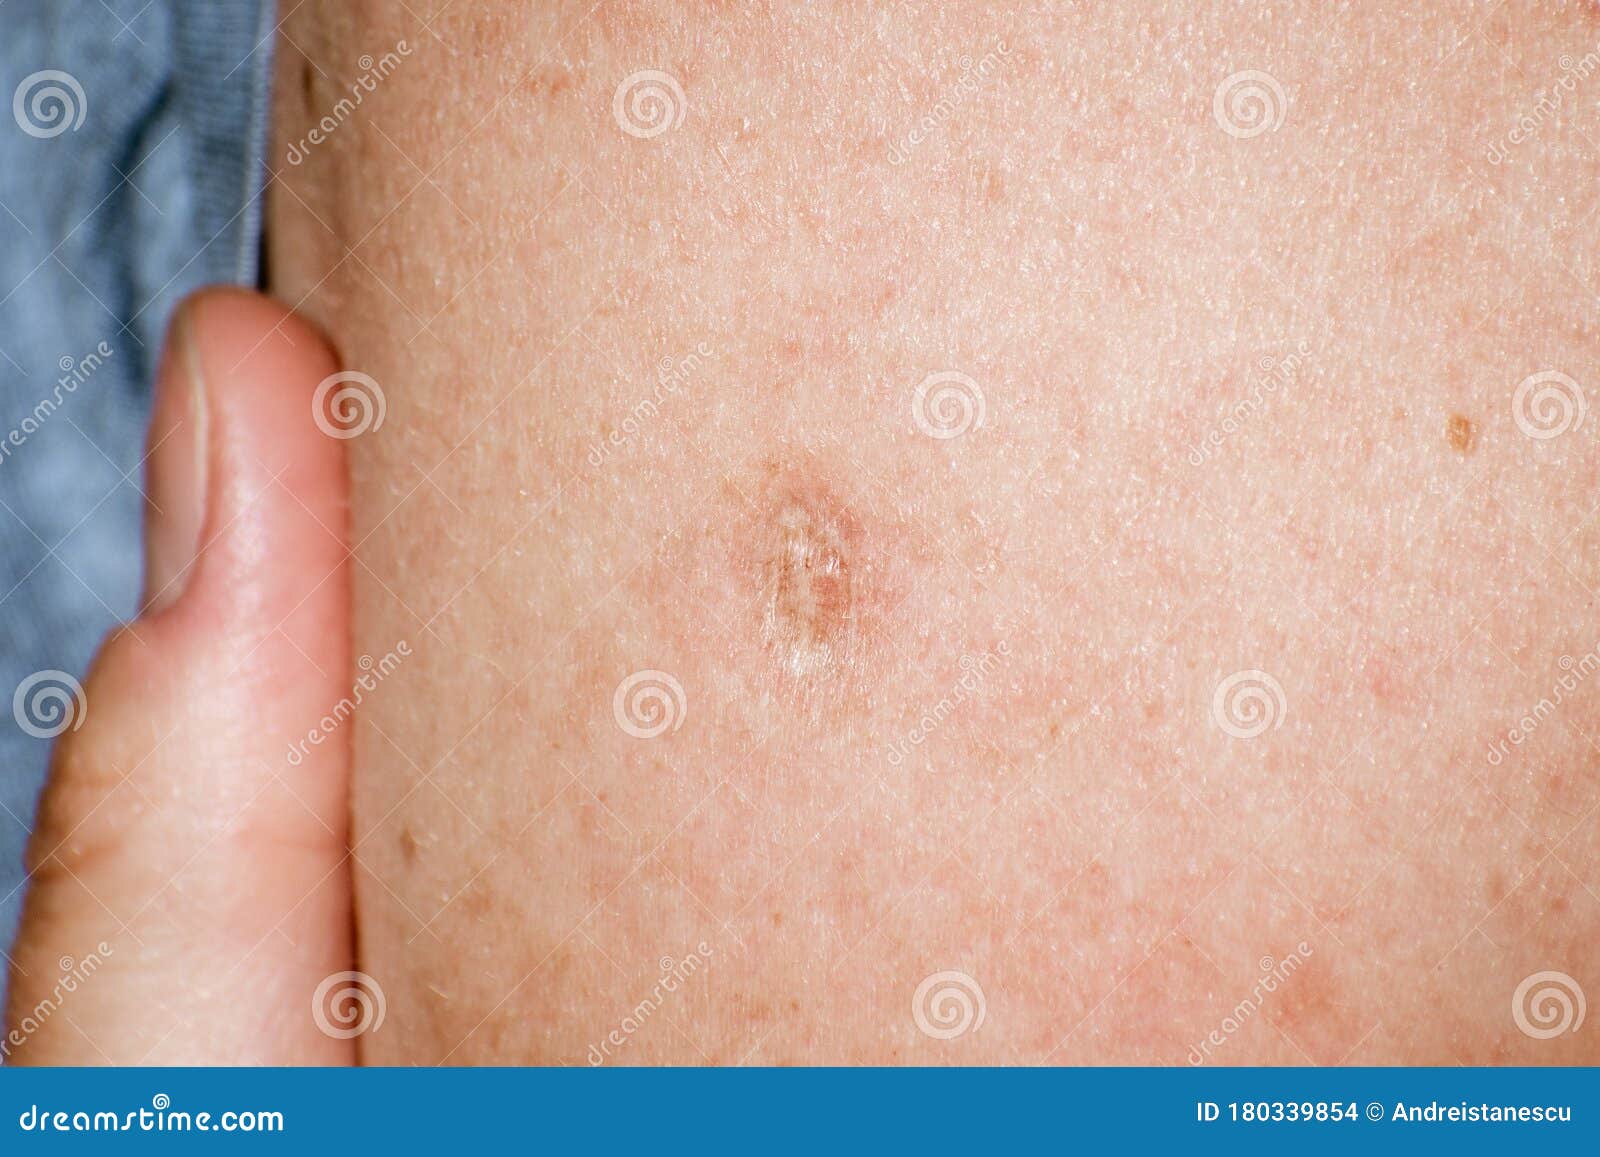 close up of bacillus calmette-guÃÂ©rin bcg vaccine scar mark in the upper left arm of an adult person; bcg vaccine is usually